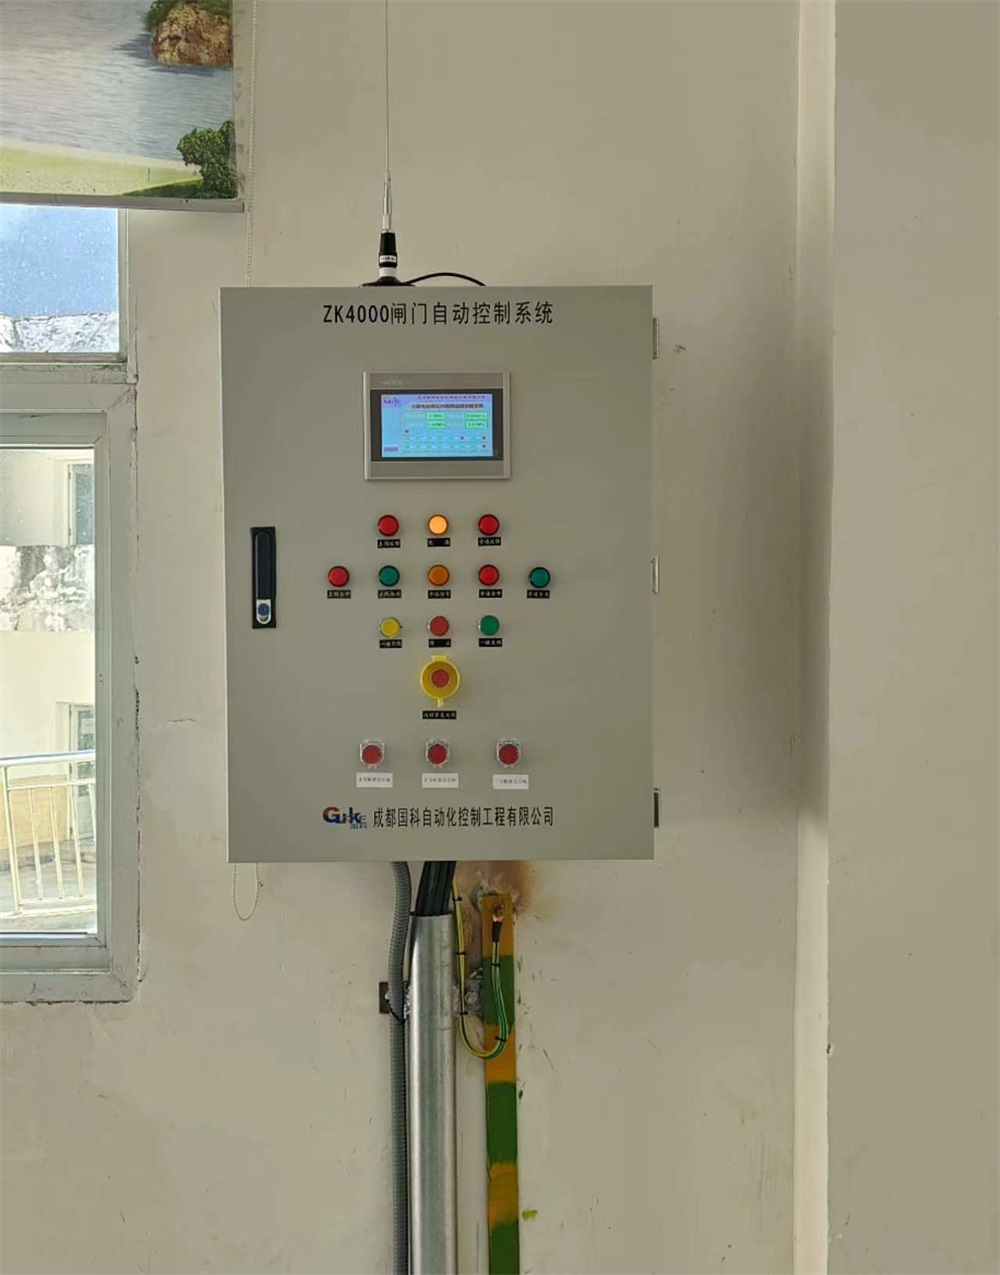 水利閘門自動化控制系統簡介及構成